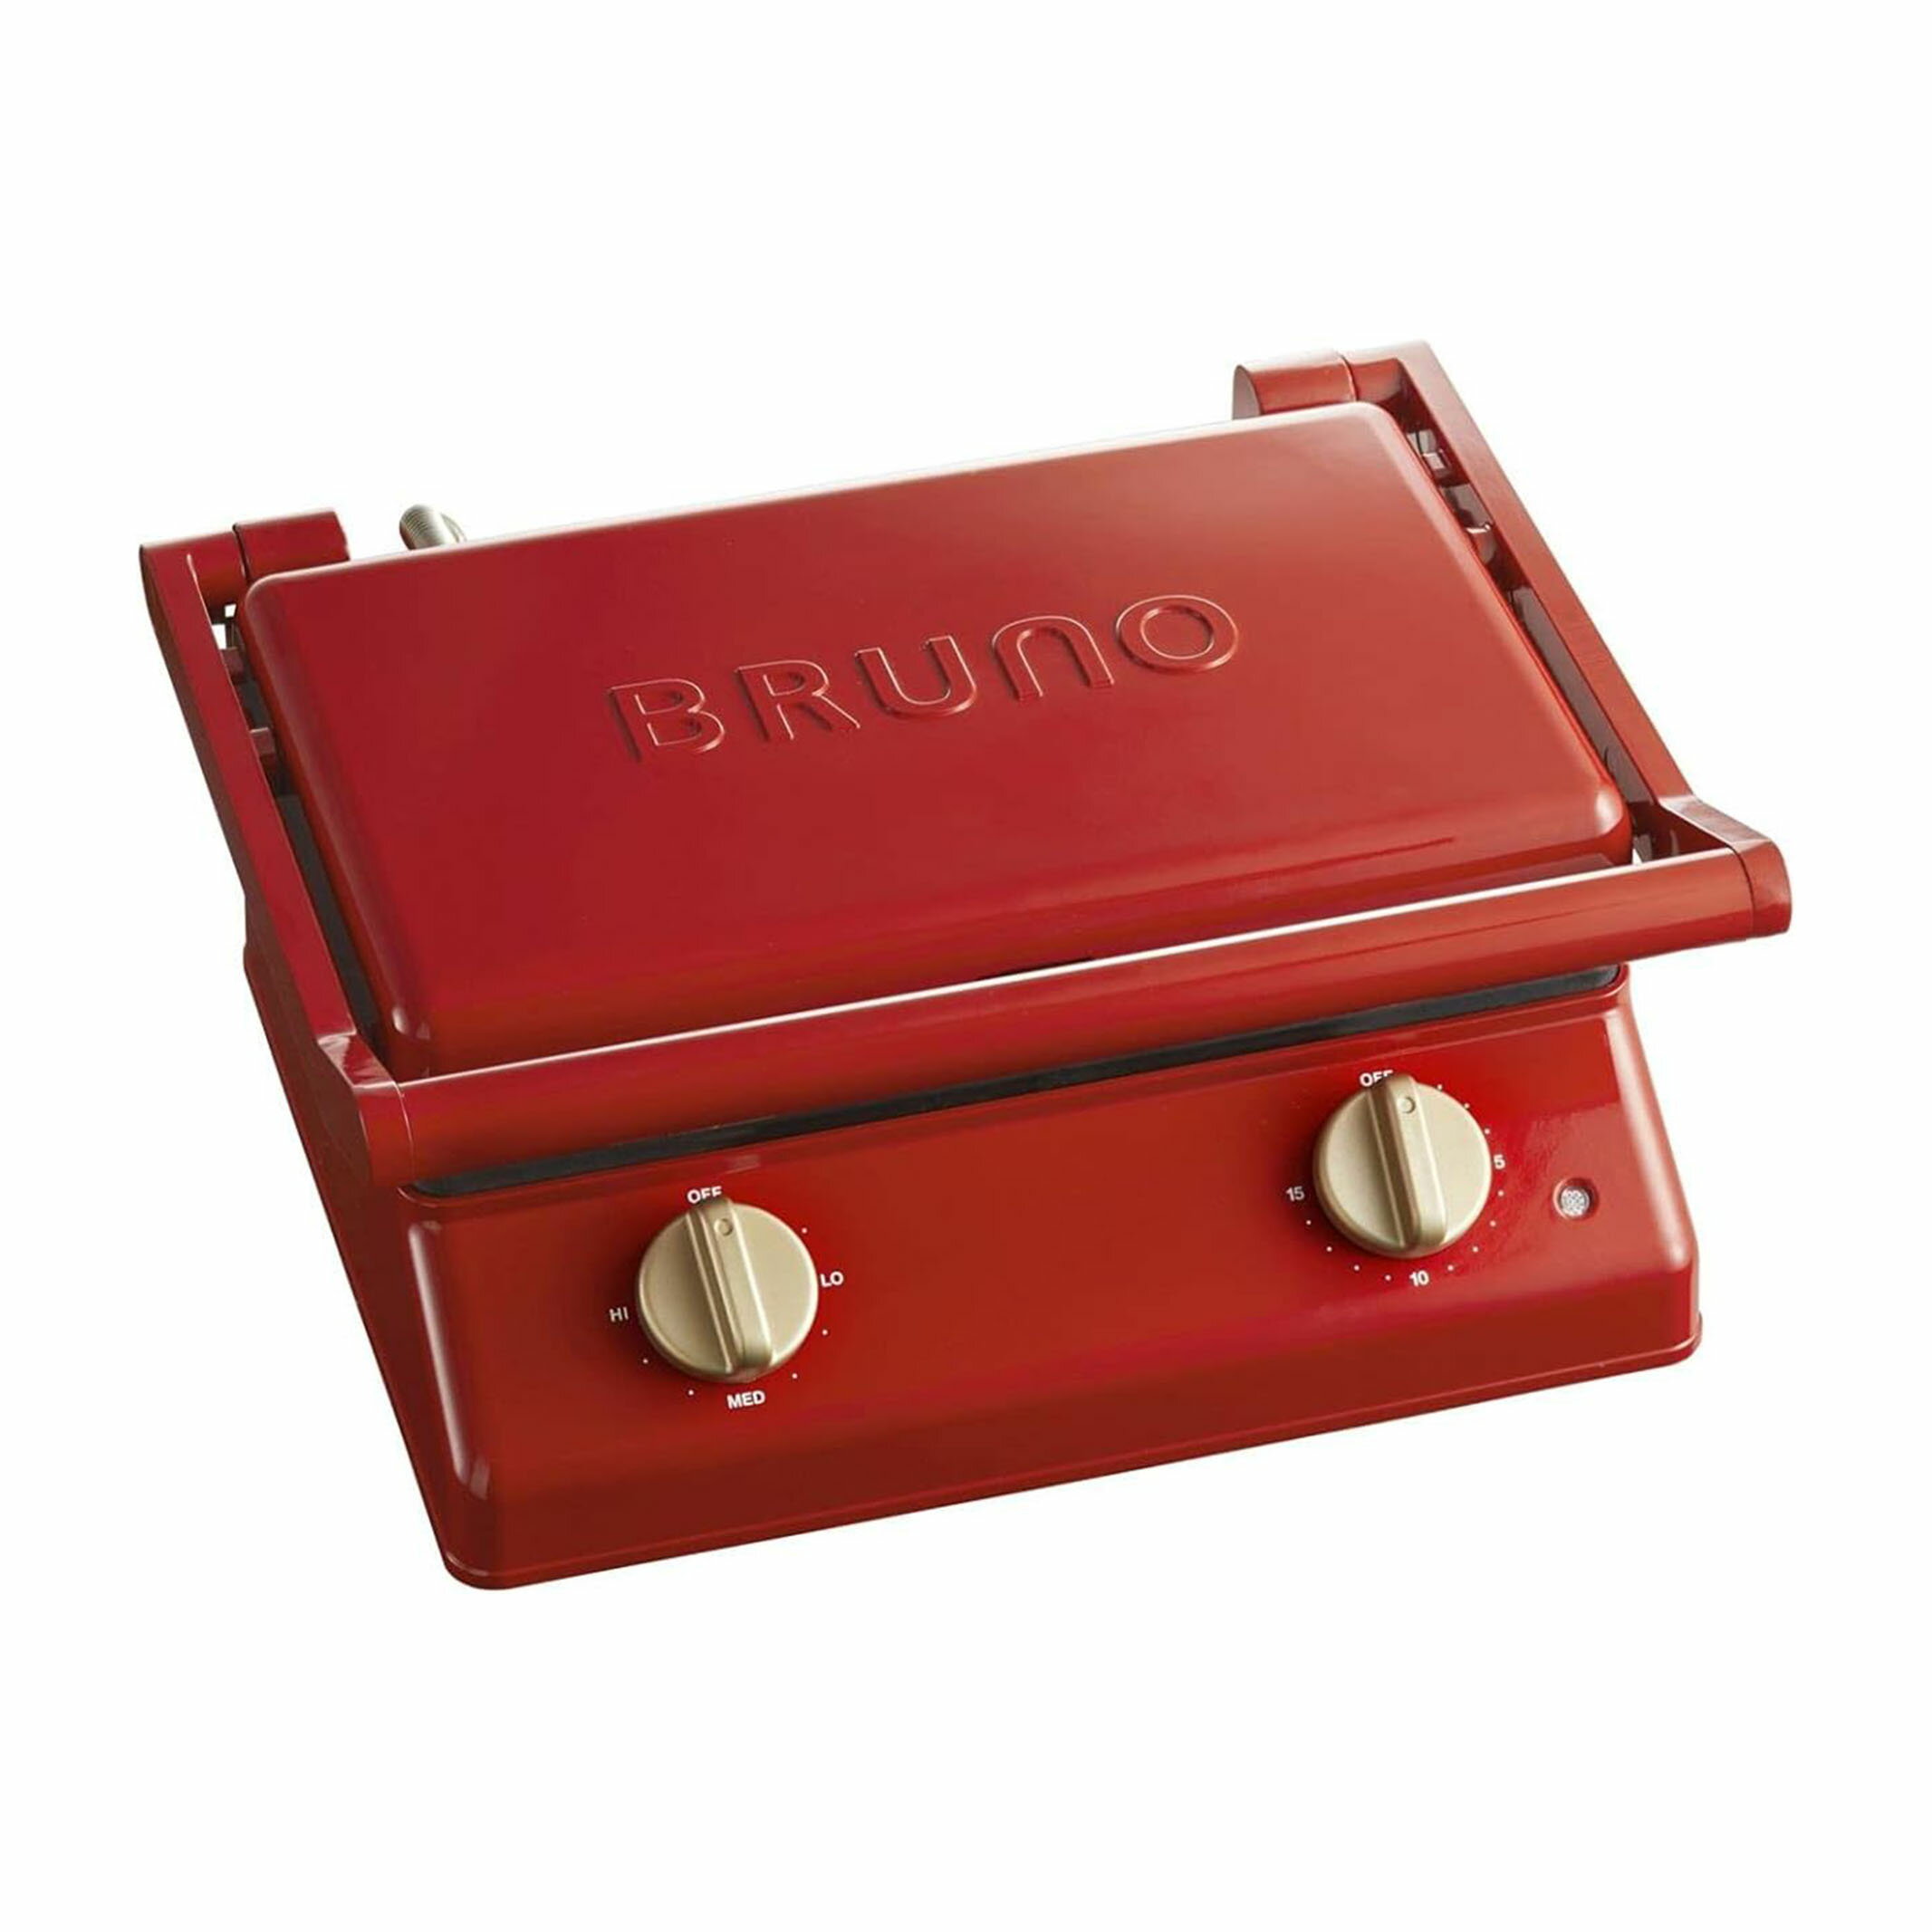 BRUNO ブルーノ グリルサンドメーカー ダブル レッド BOE084-RD